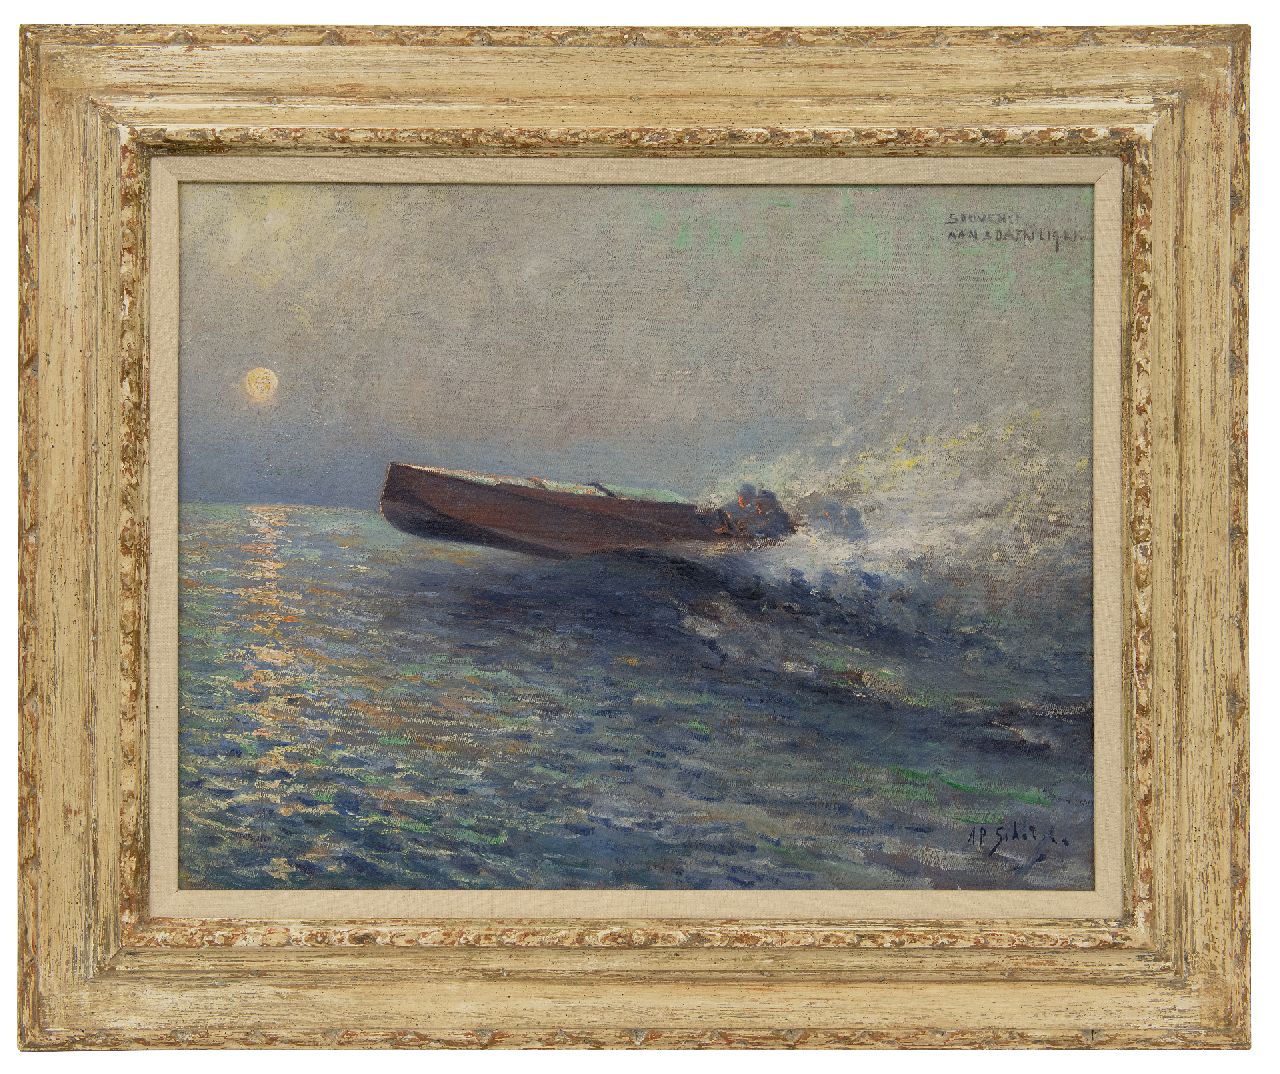 Schotel A.P.  | Anthonie Pieter Schotel, Speedboot op zee bij zonsondergang, olieverf op doek 43,6 x 57,3 cm, gesigneerd rechtsonder